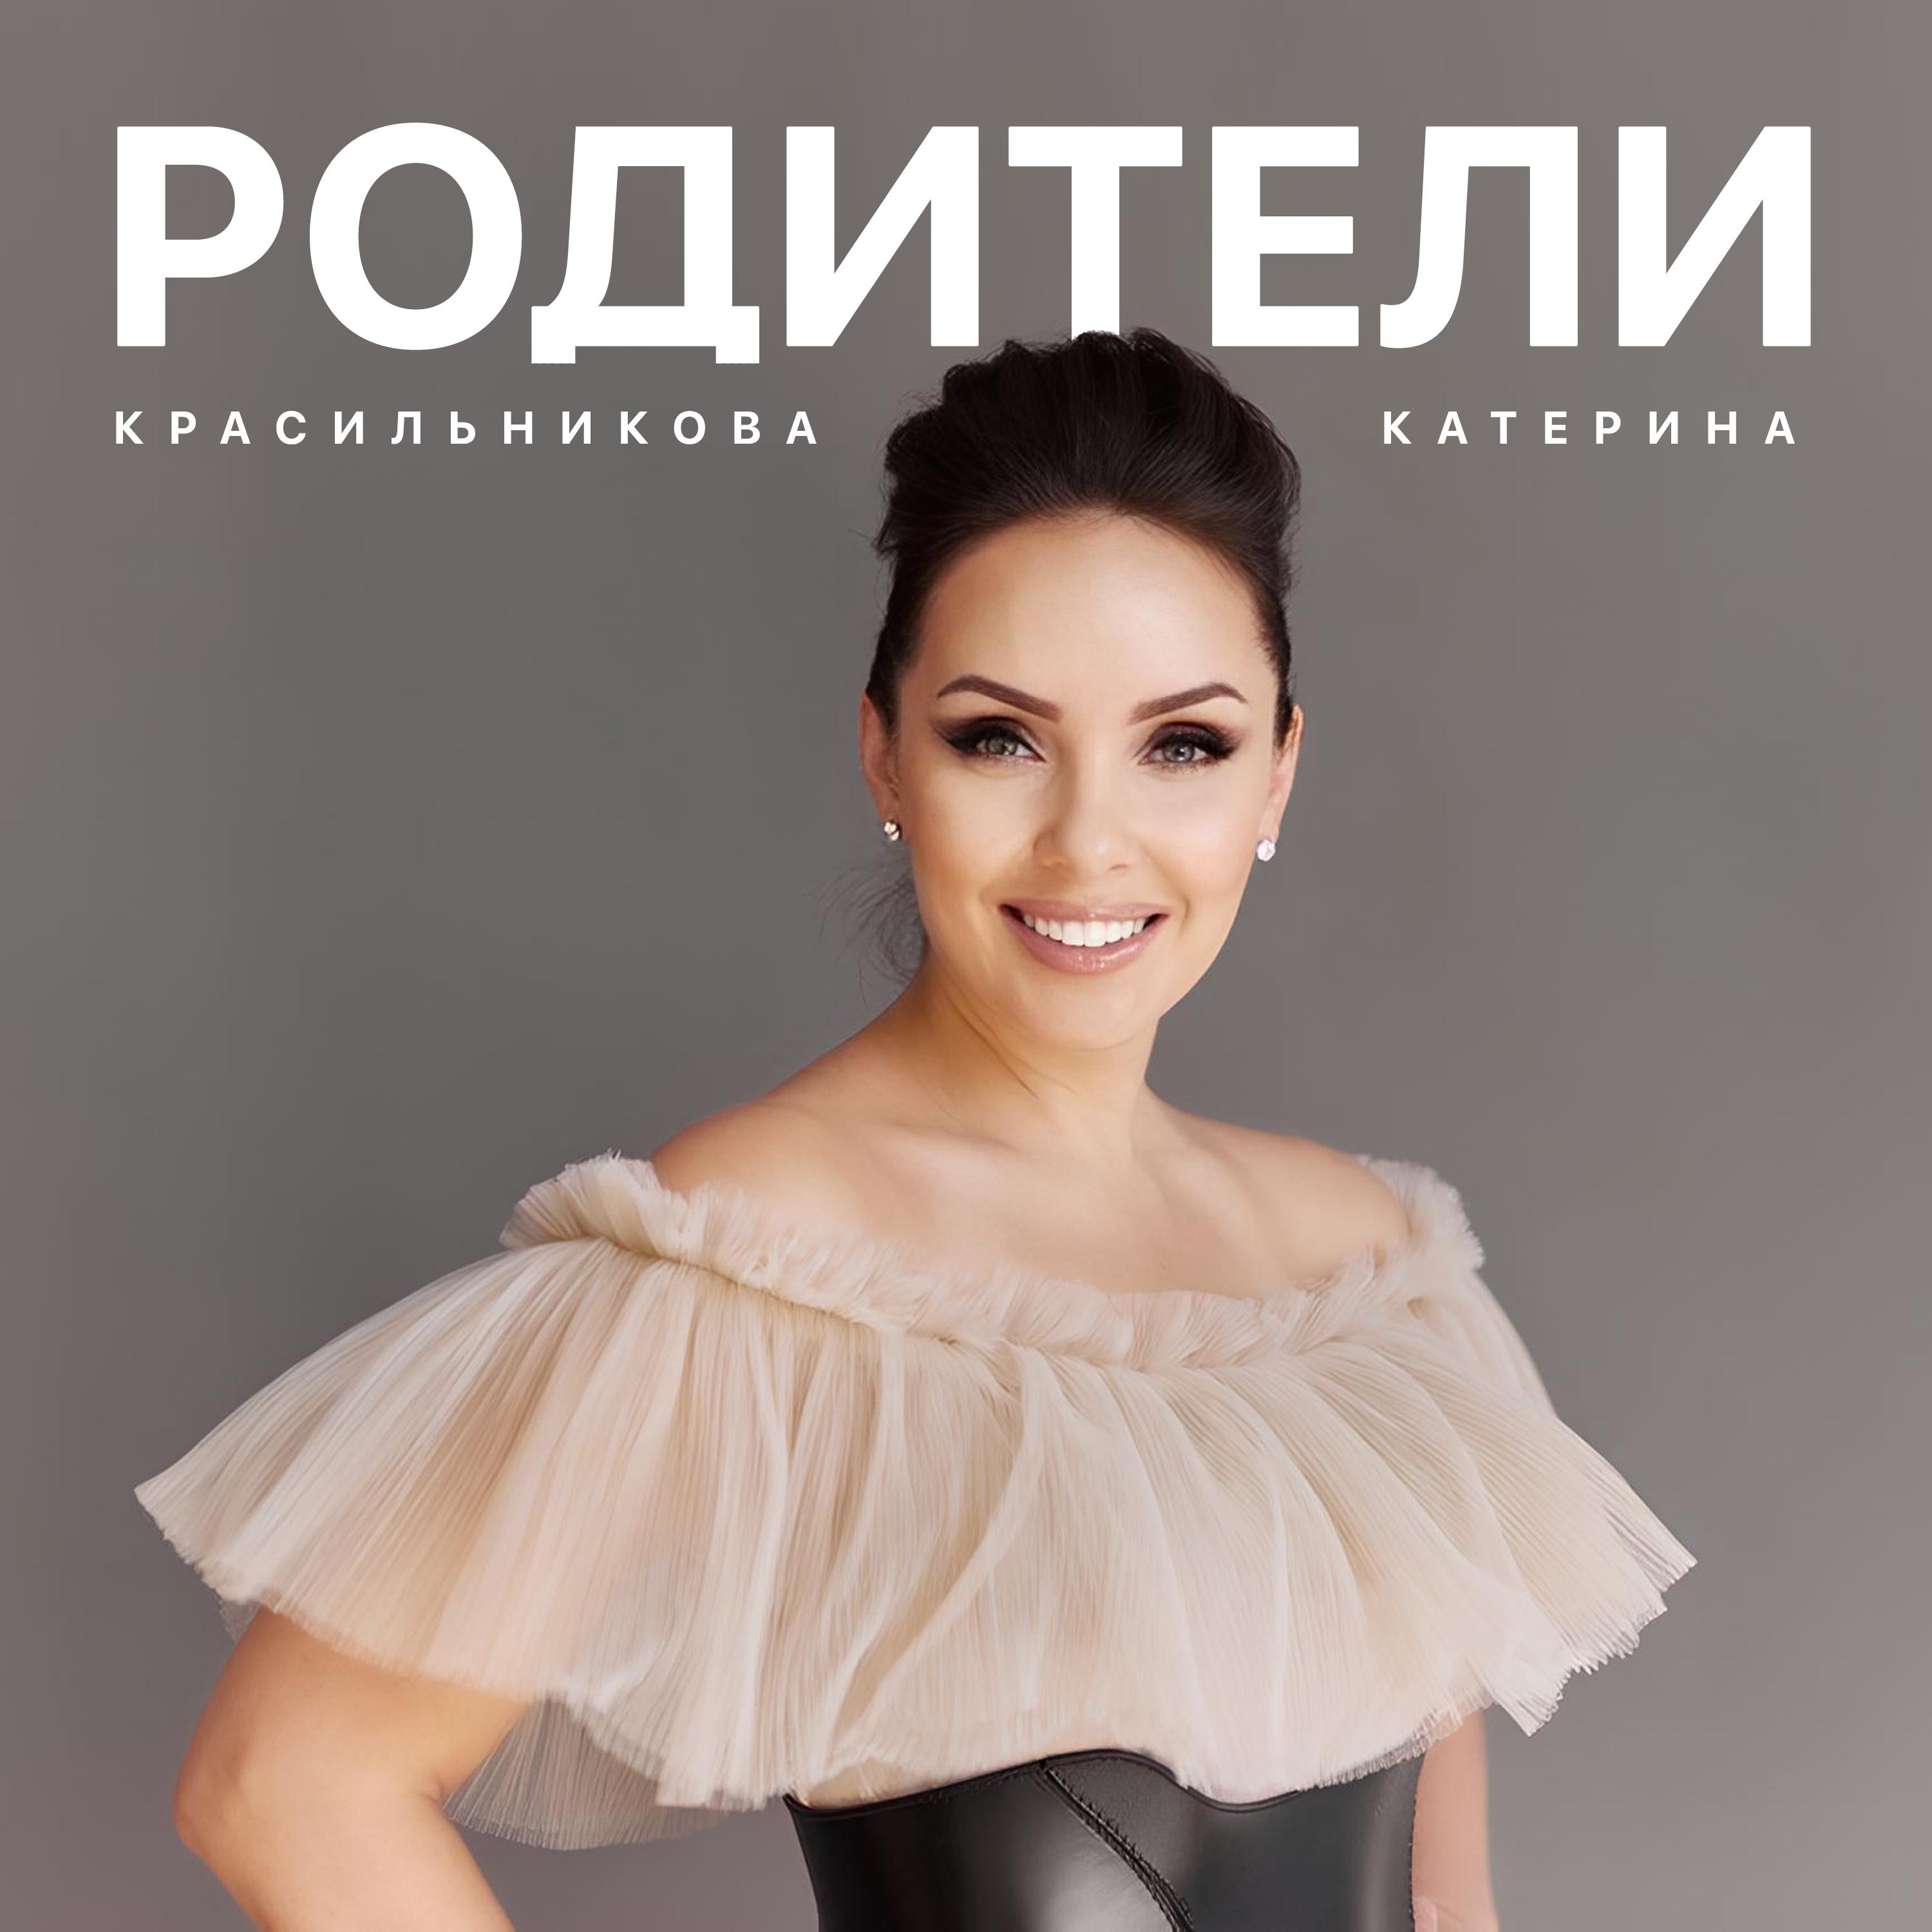 Катерина Красильникова все песни в mp3